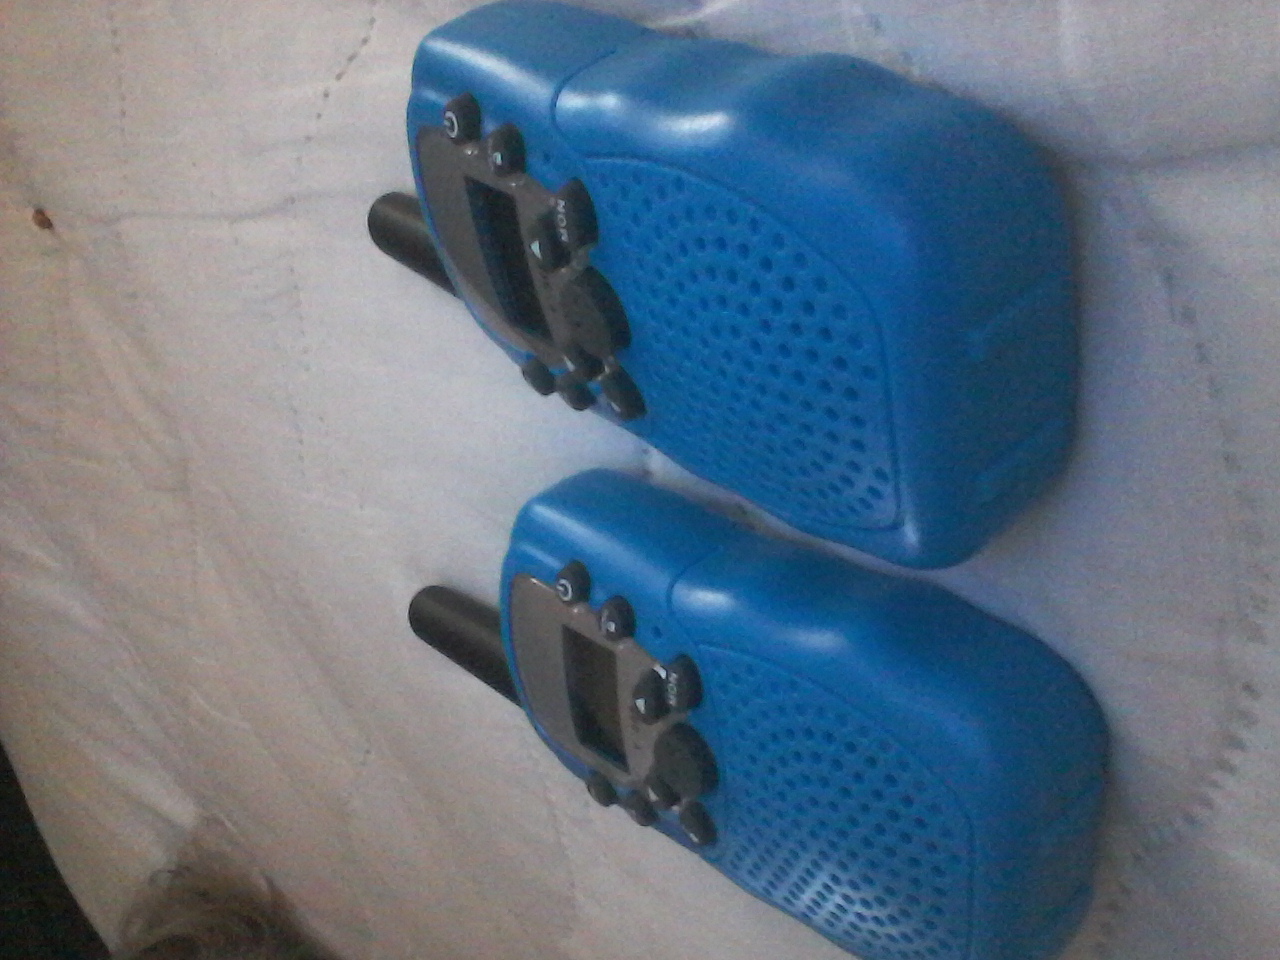 Great set of walkie talkies.